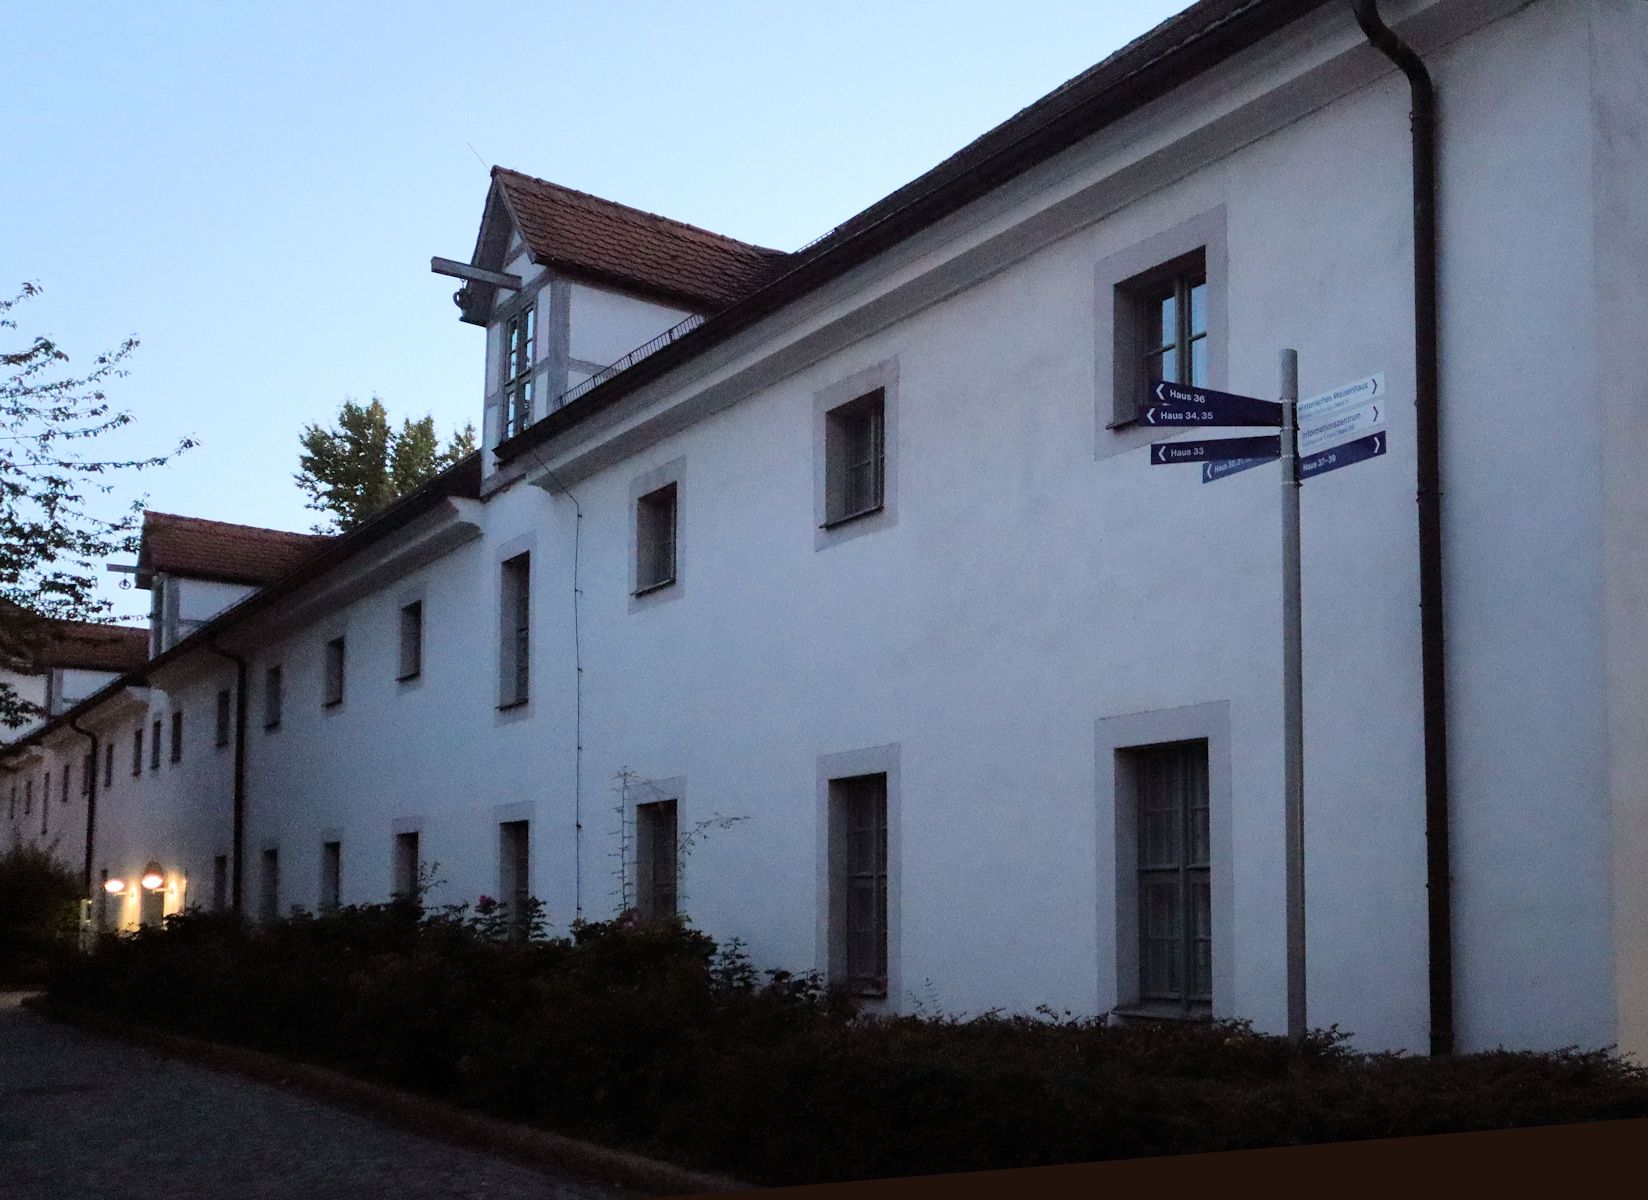 Gebäude der Theologischen Fakultät in den Francke'schen Anstalten in Halle